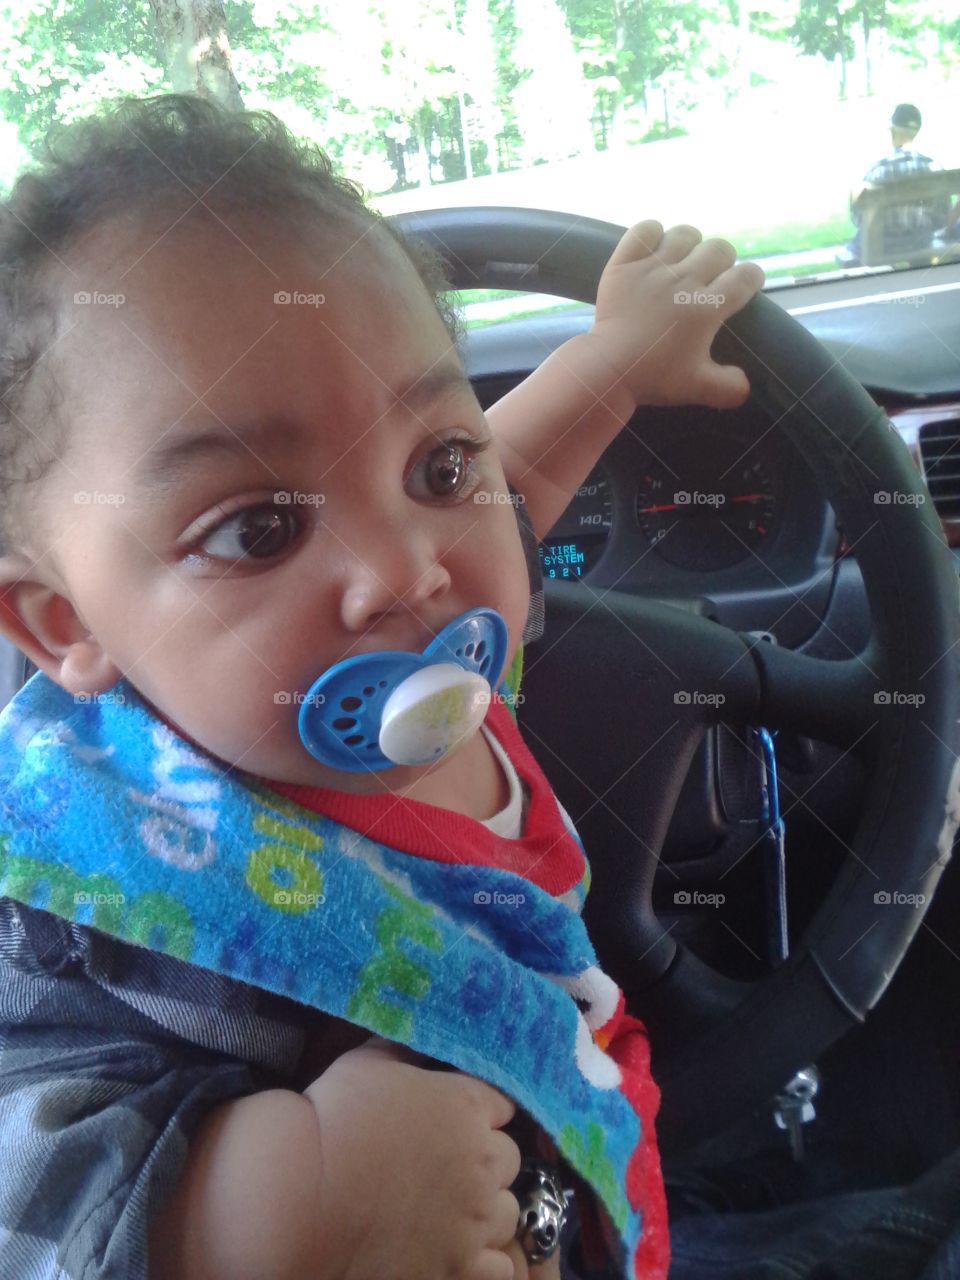 Son taking the wheel